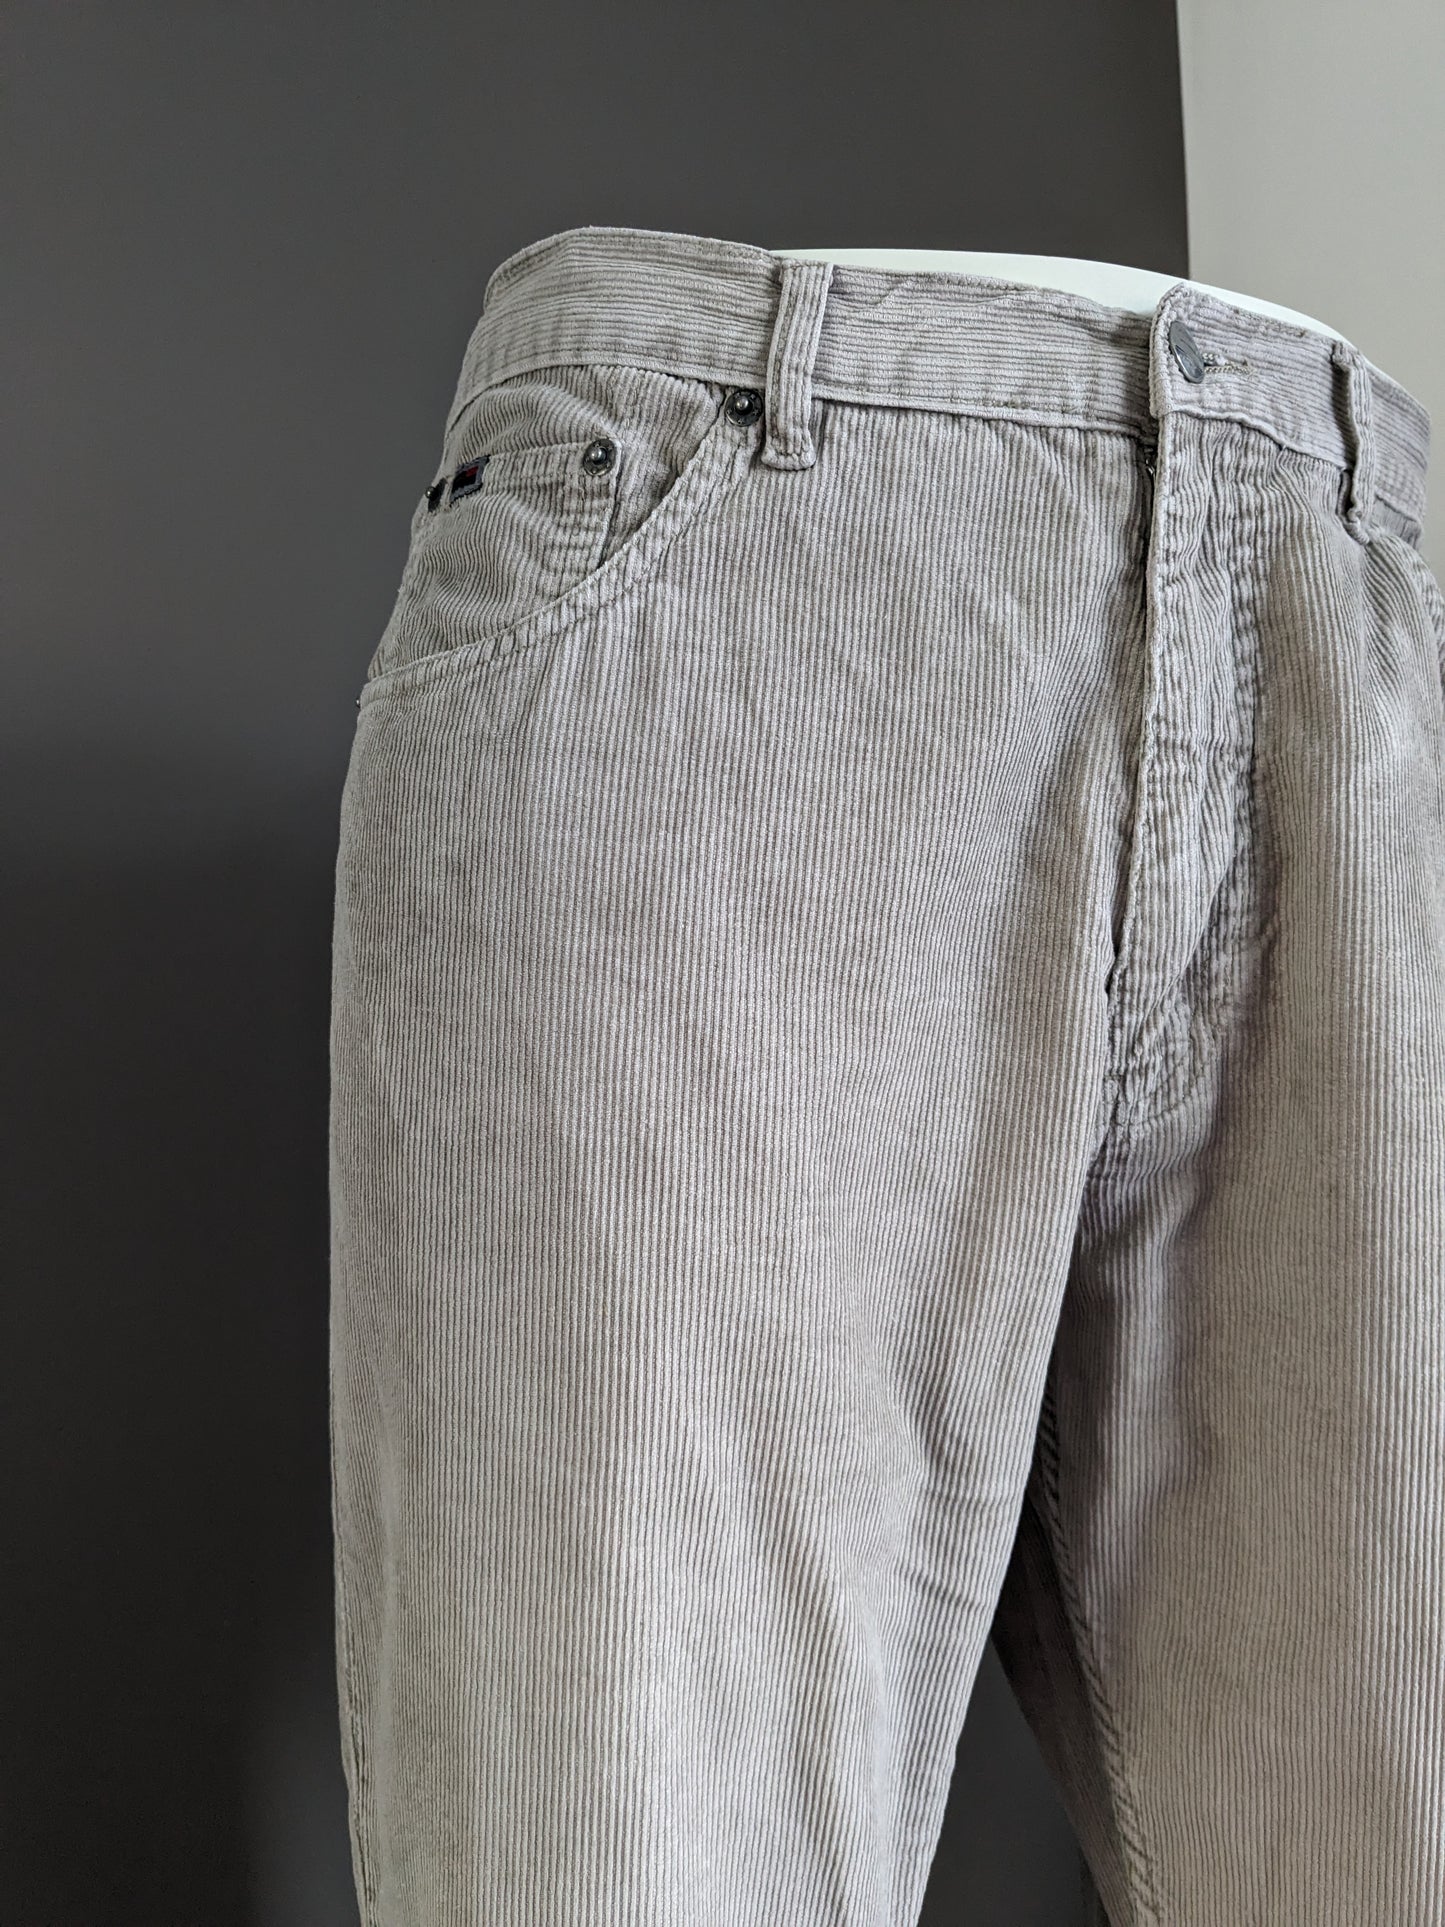 Pantalon de côtes de canore vintage. Beige. Taille W34 - L30.